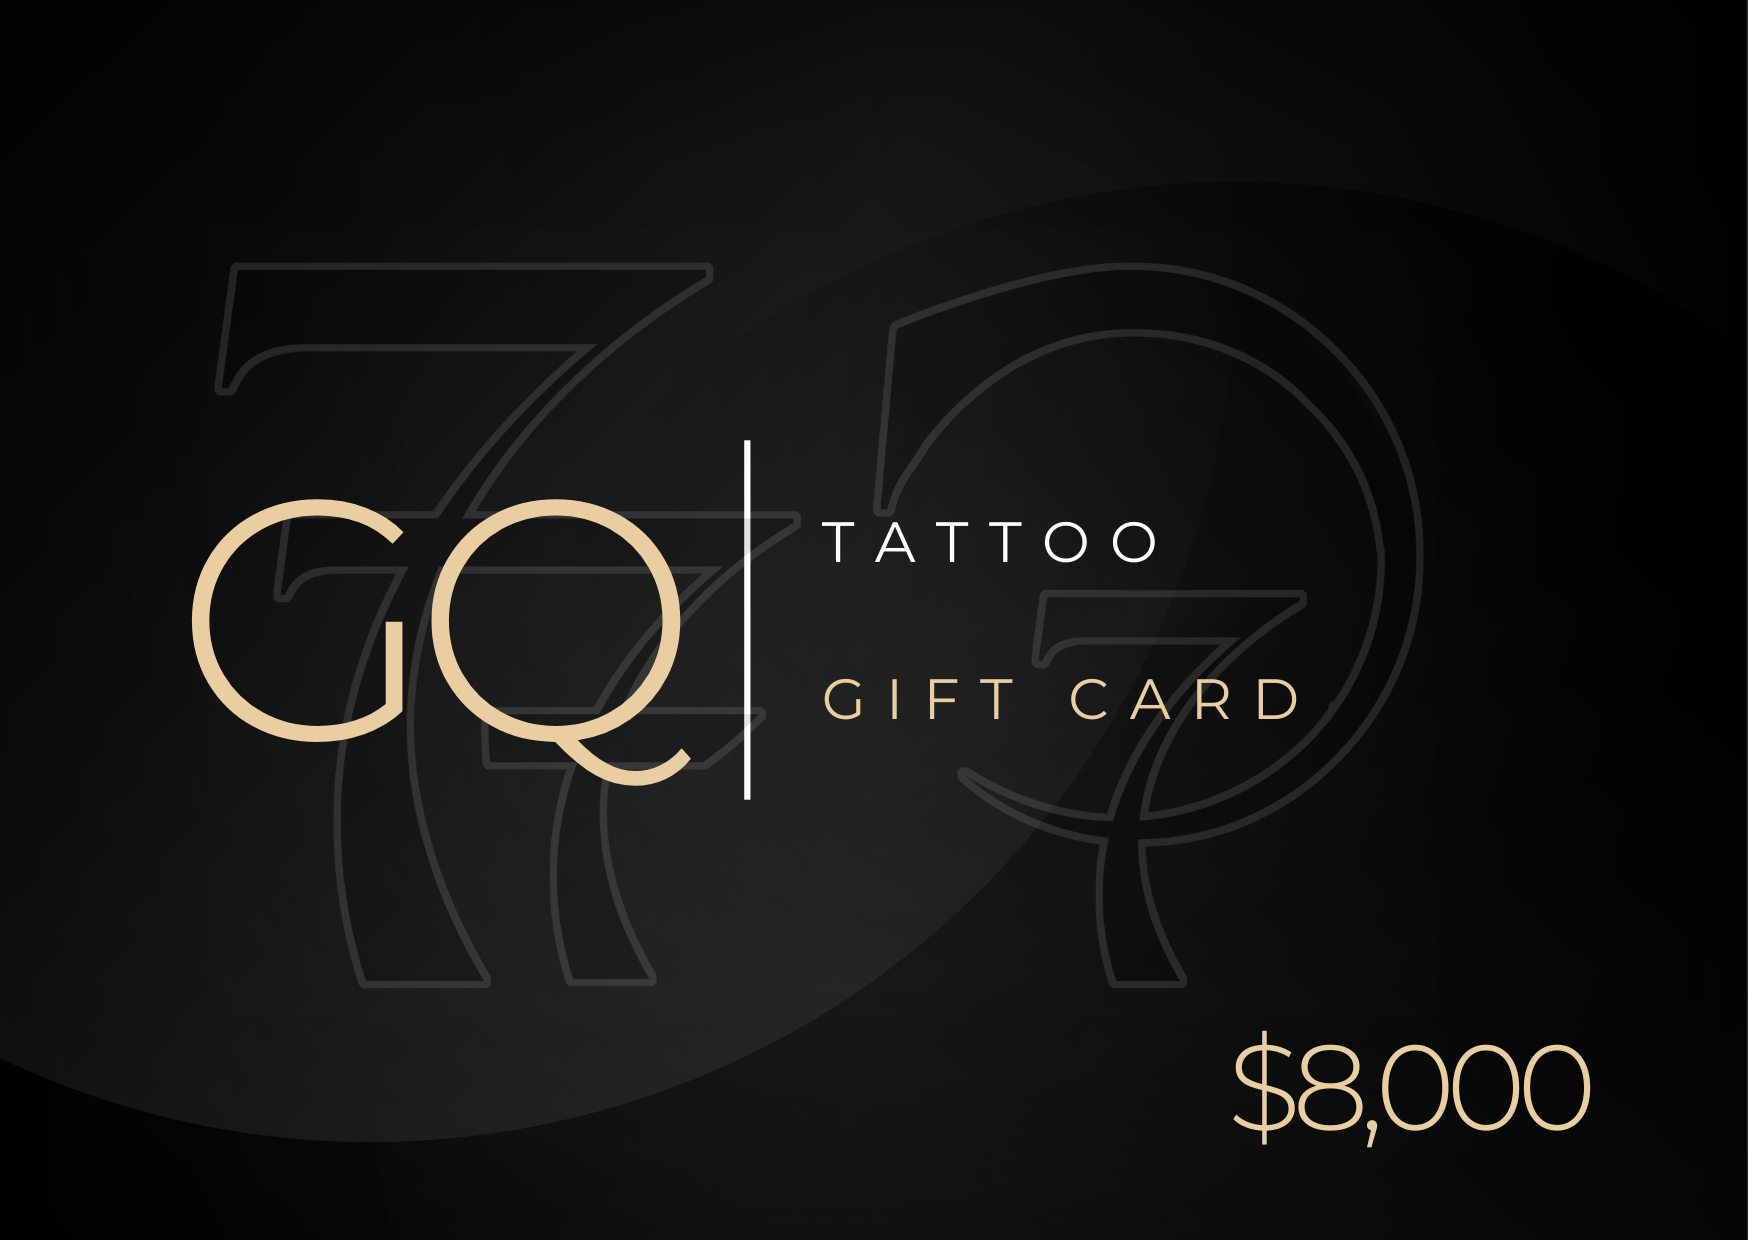 GQ tattoo gift card